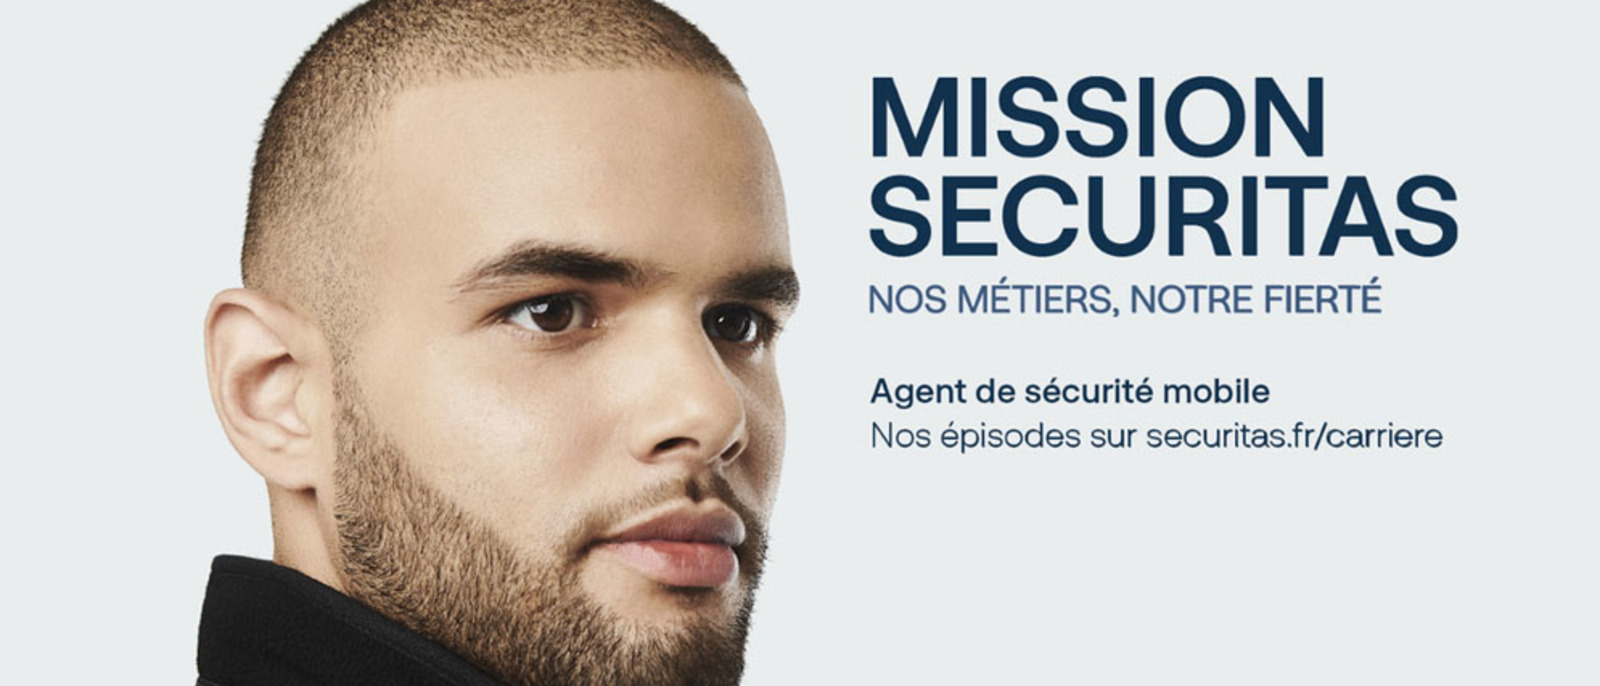 Mission Securitas : agent de sécurité mobile